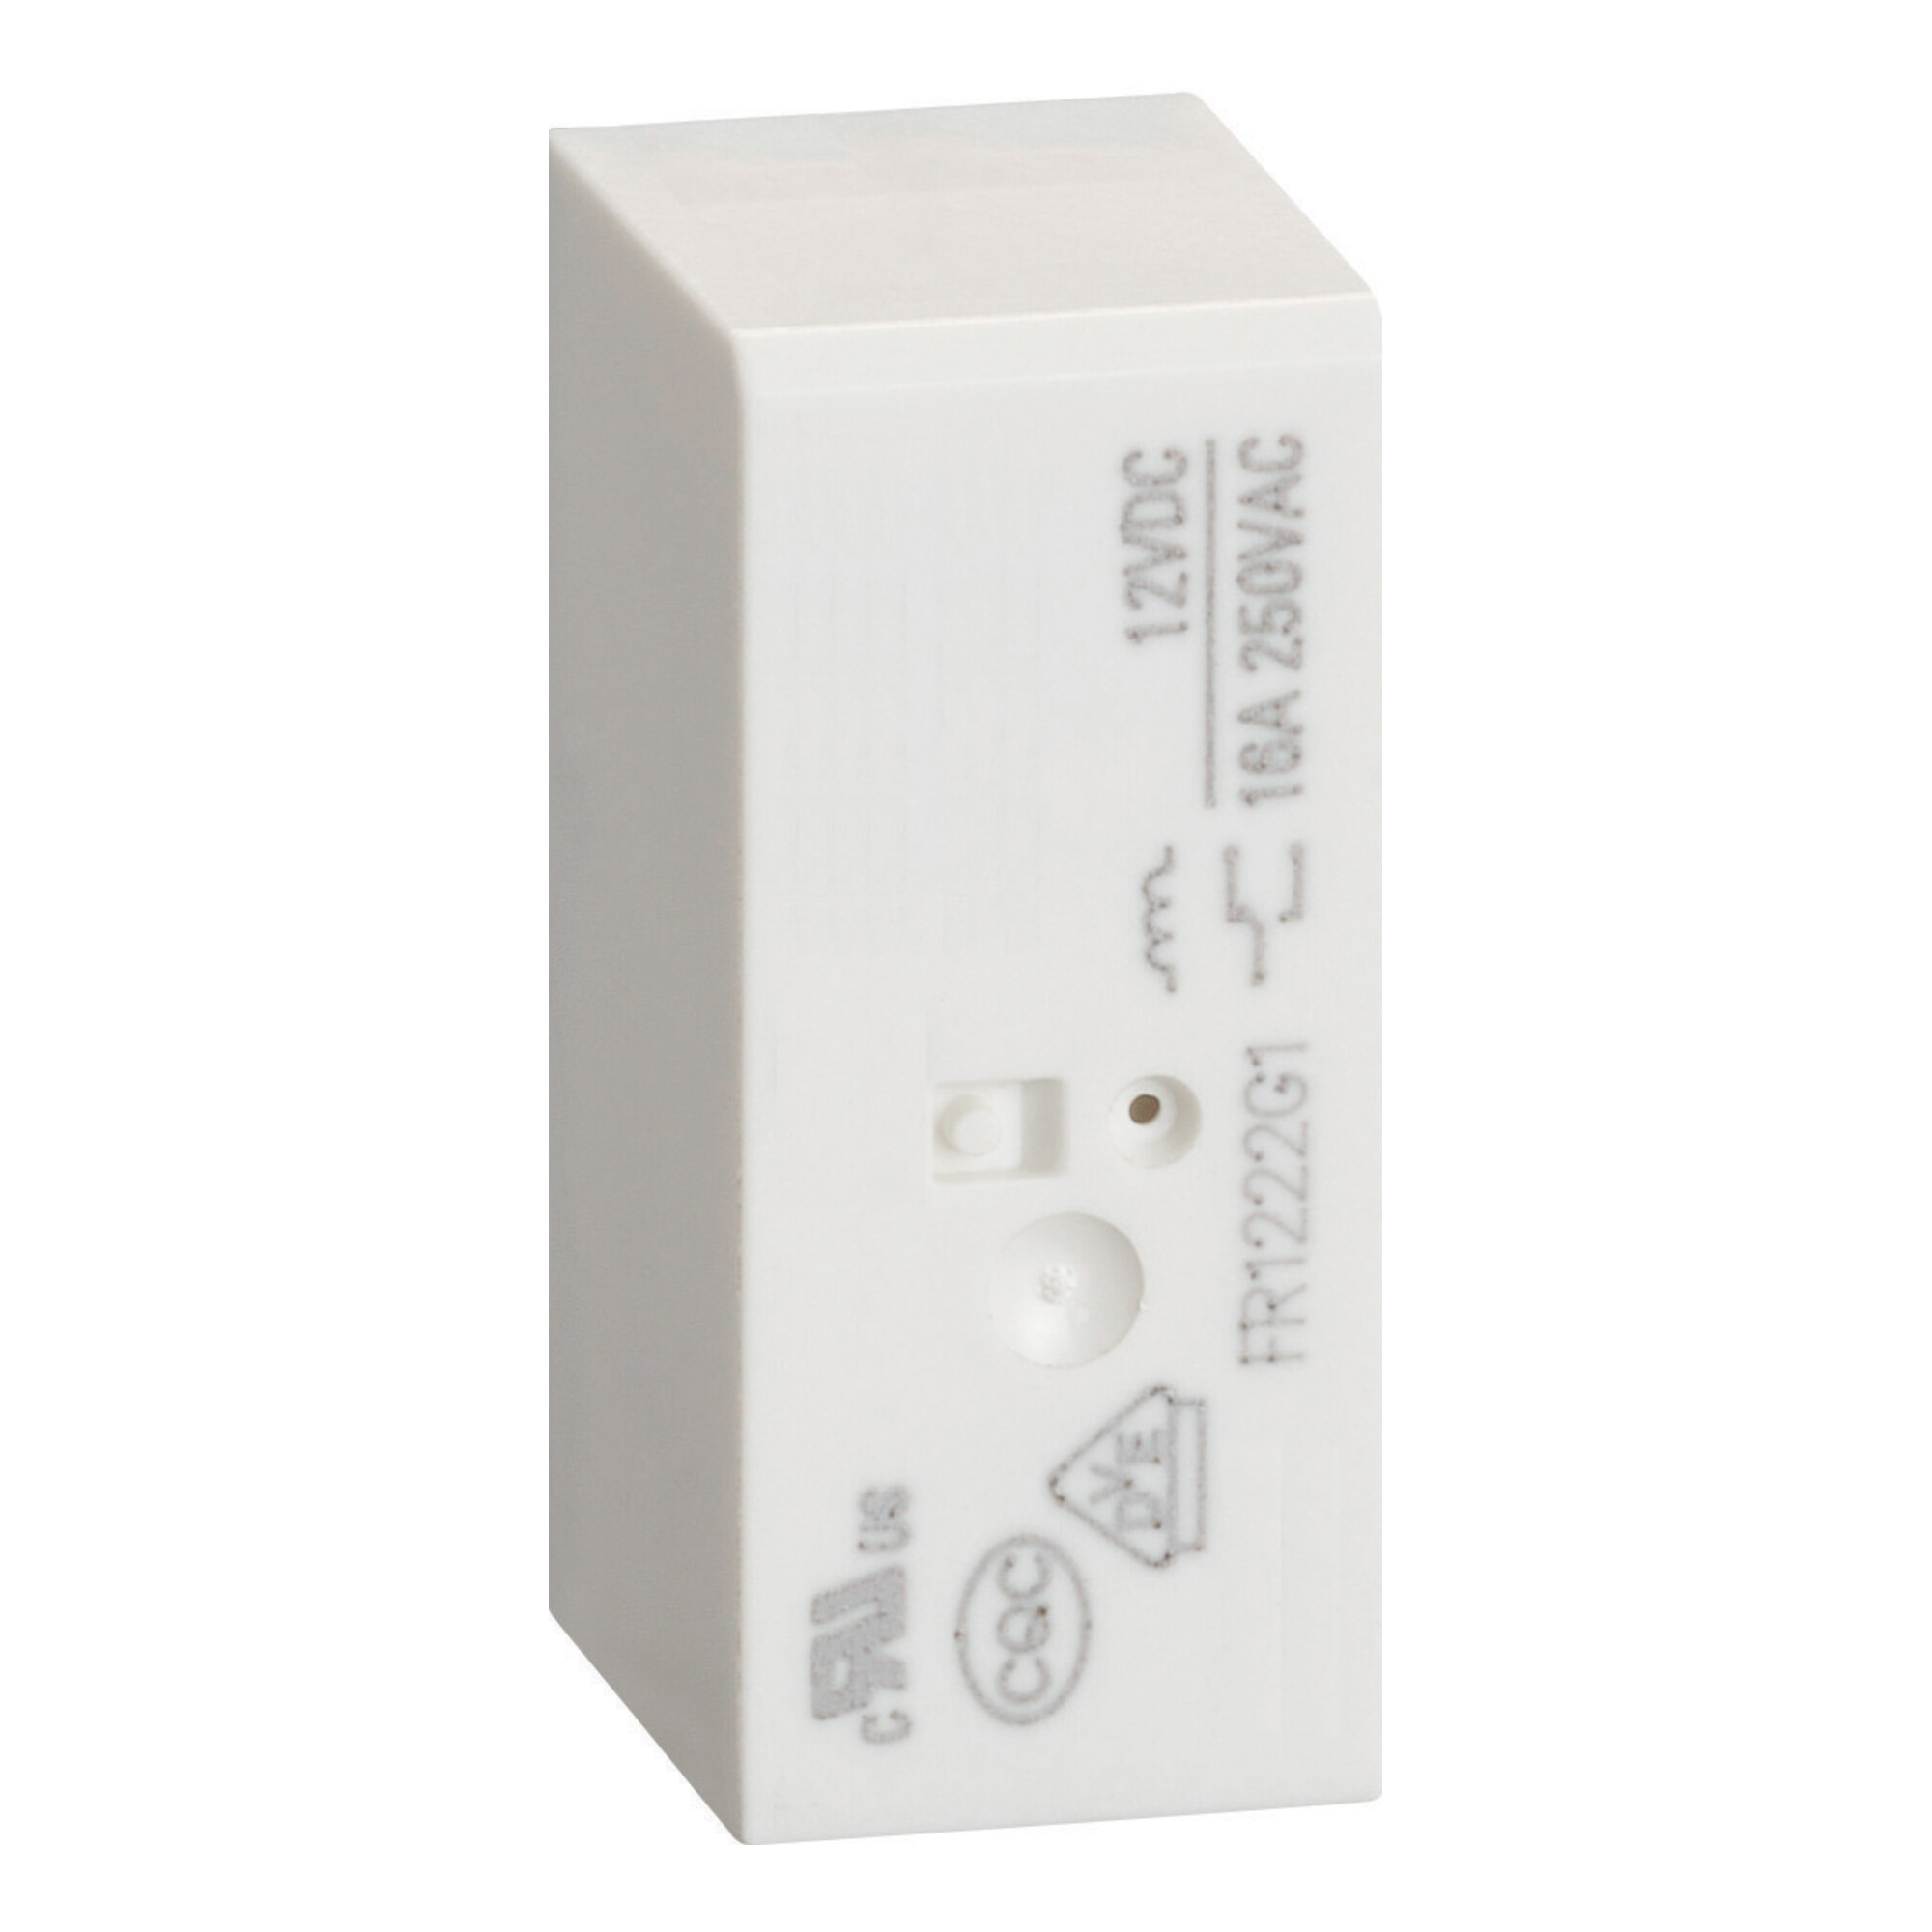 60-HR302CD024 Insteekrelais (mini) HR30 Miniatuur relais, geschikt voor 1 of 2 wisselcontacten.
Max. 10A (16A op PCB), beschikbaar in AC of DC.
Voet breedte 15,8mm.